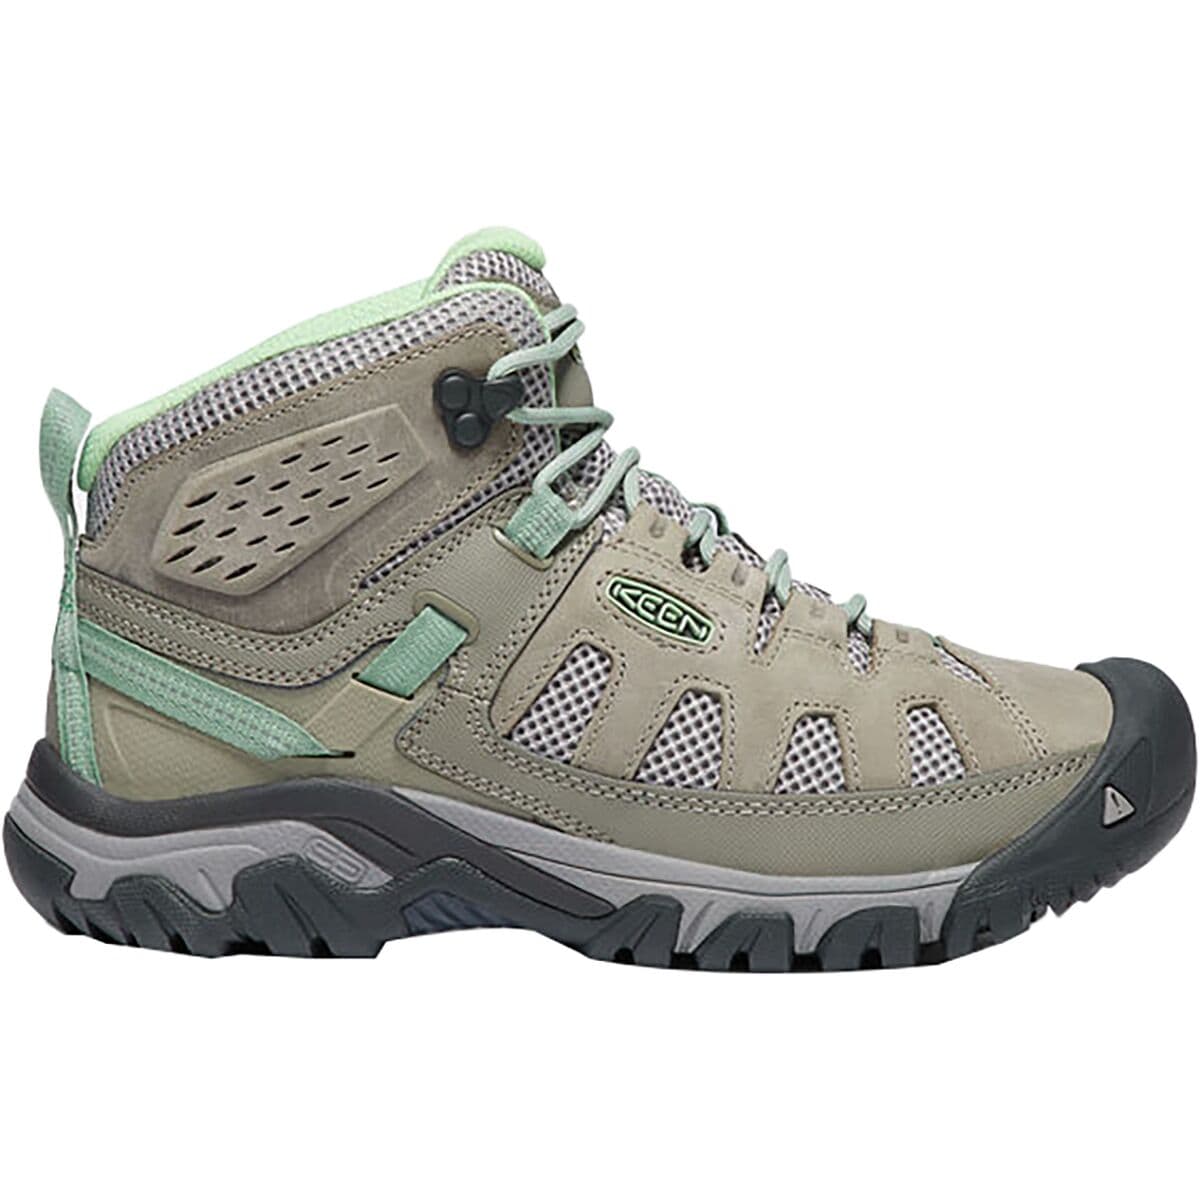 KEEN Targhee Vent Mid Hiking Boot - Women's Fumo/Quiet Green 10.0